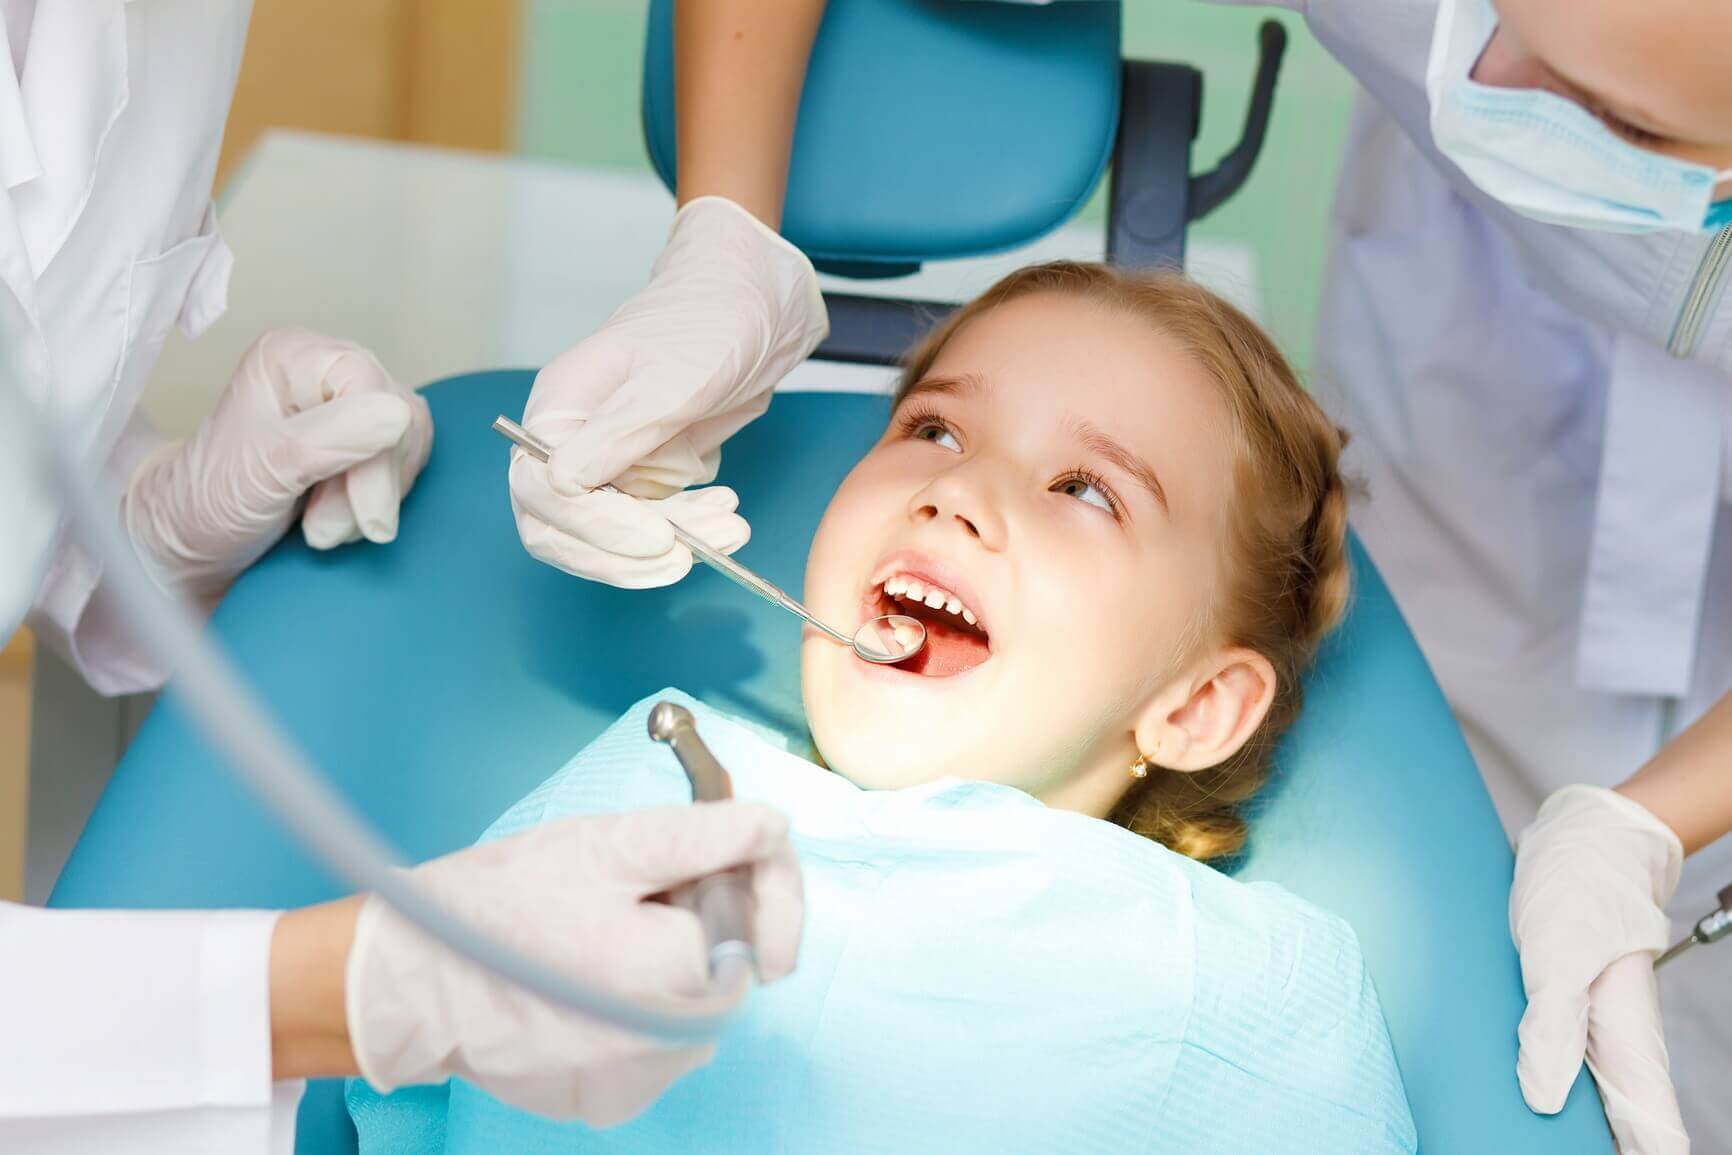 Little girl visiting dentist - Southdaviskids